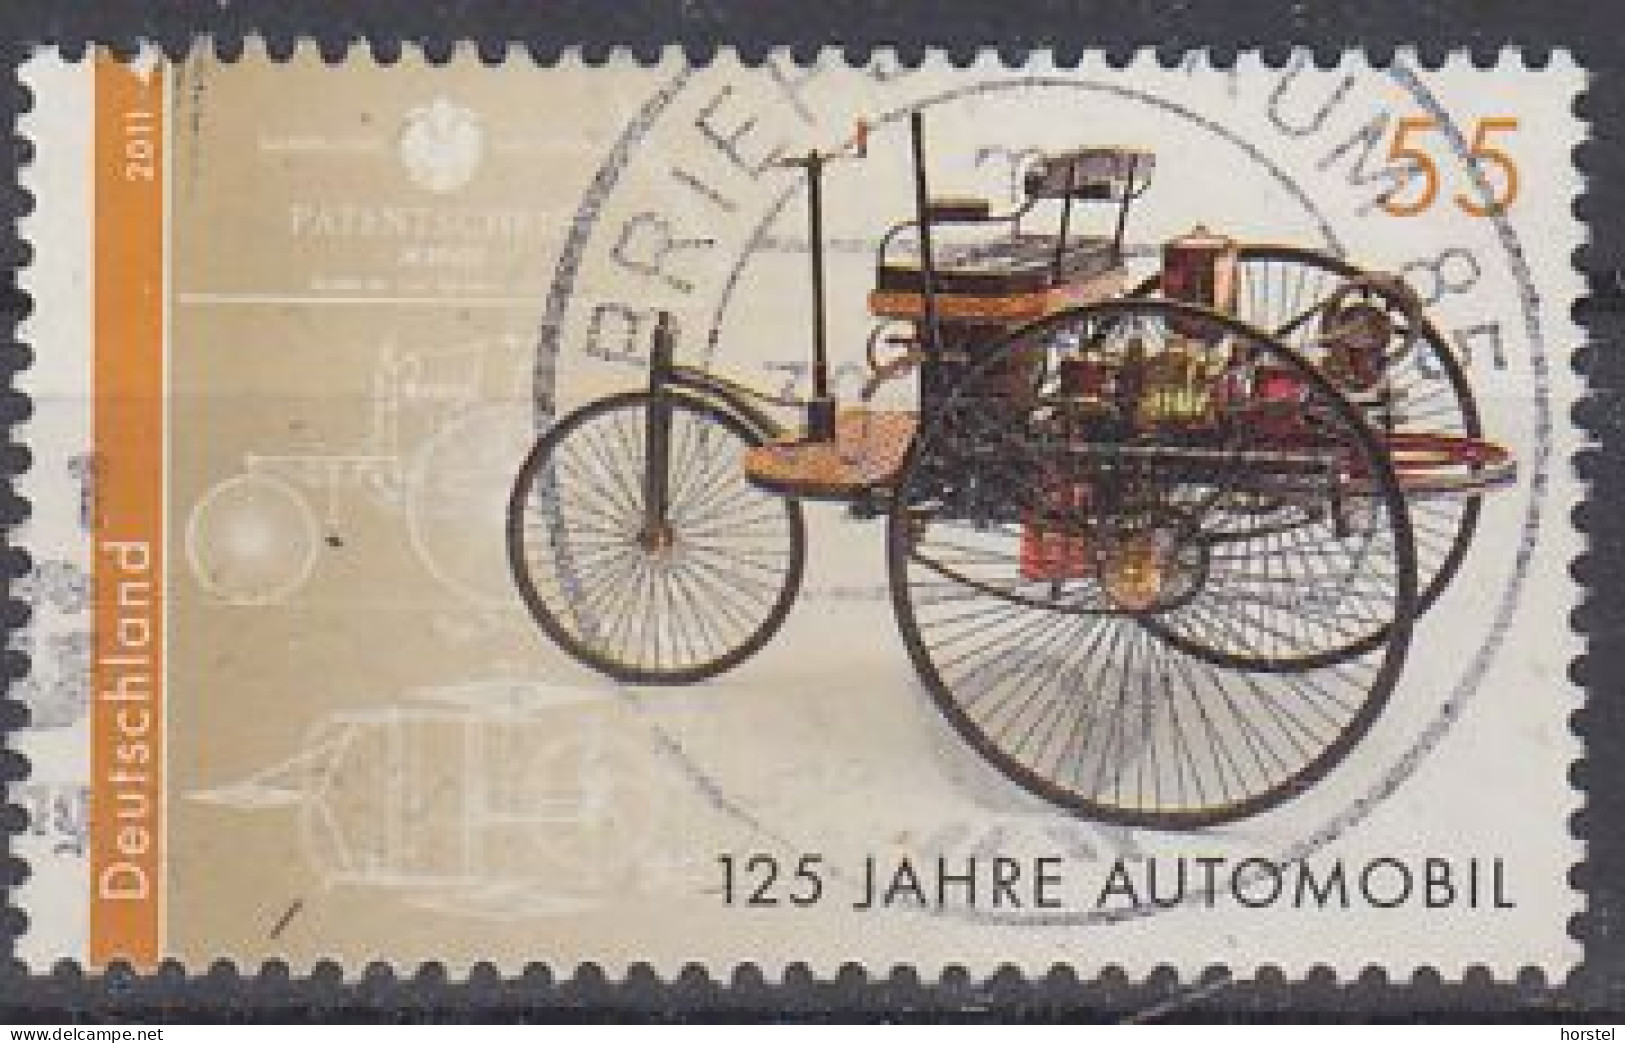 Deutschland Mi 2867  125 Jahre Automobil - Benz Patent-Motorwagen - Used Stamps